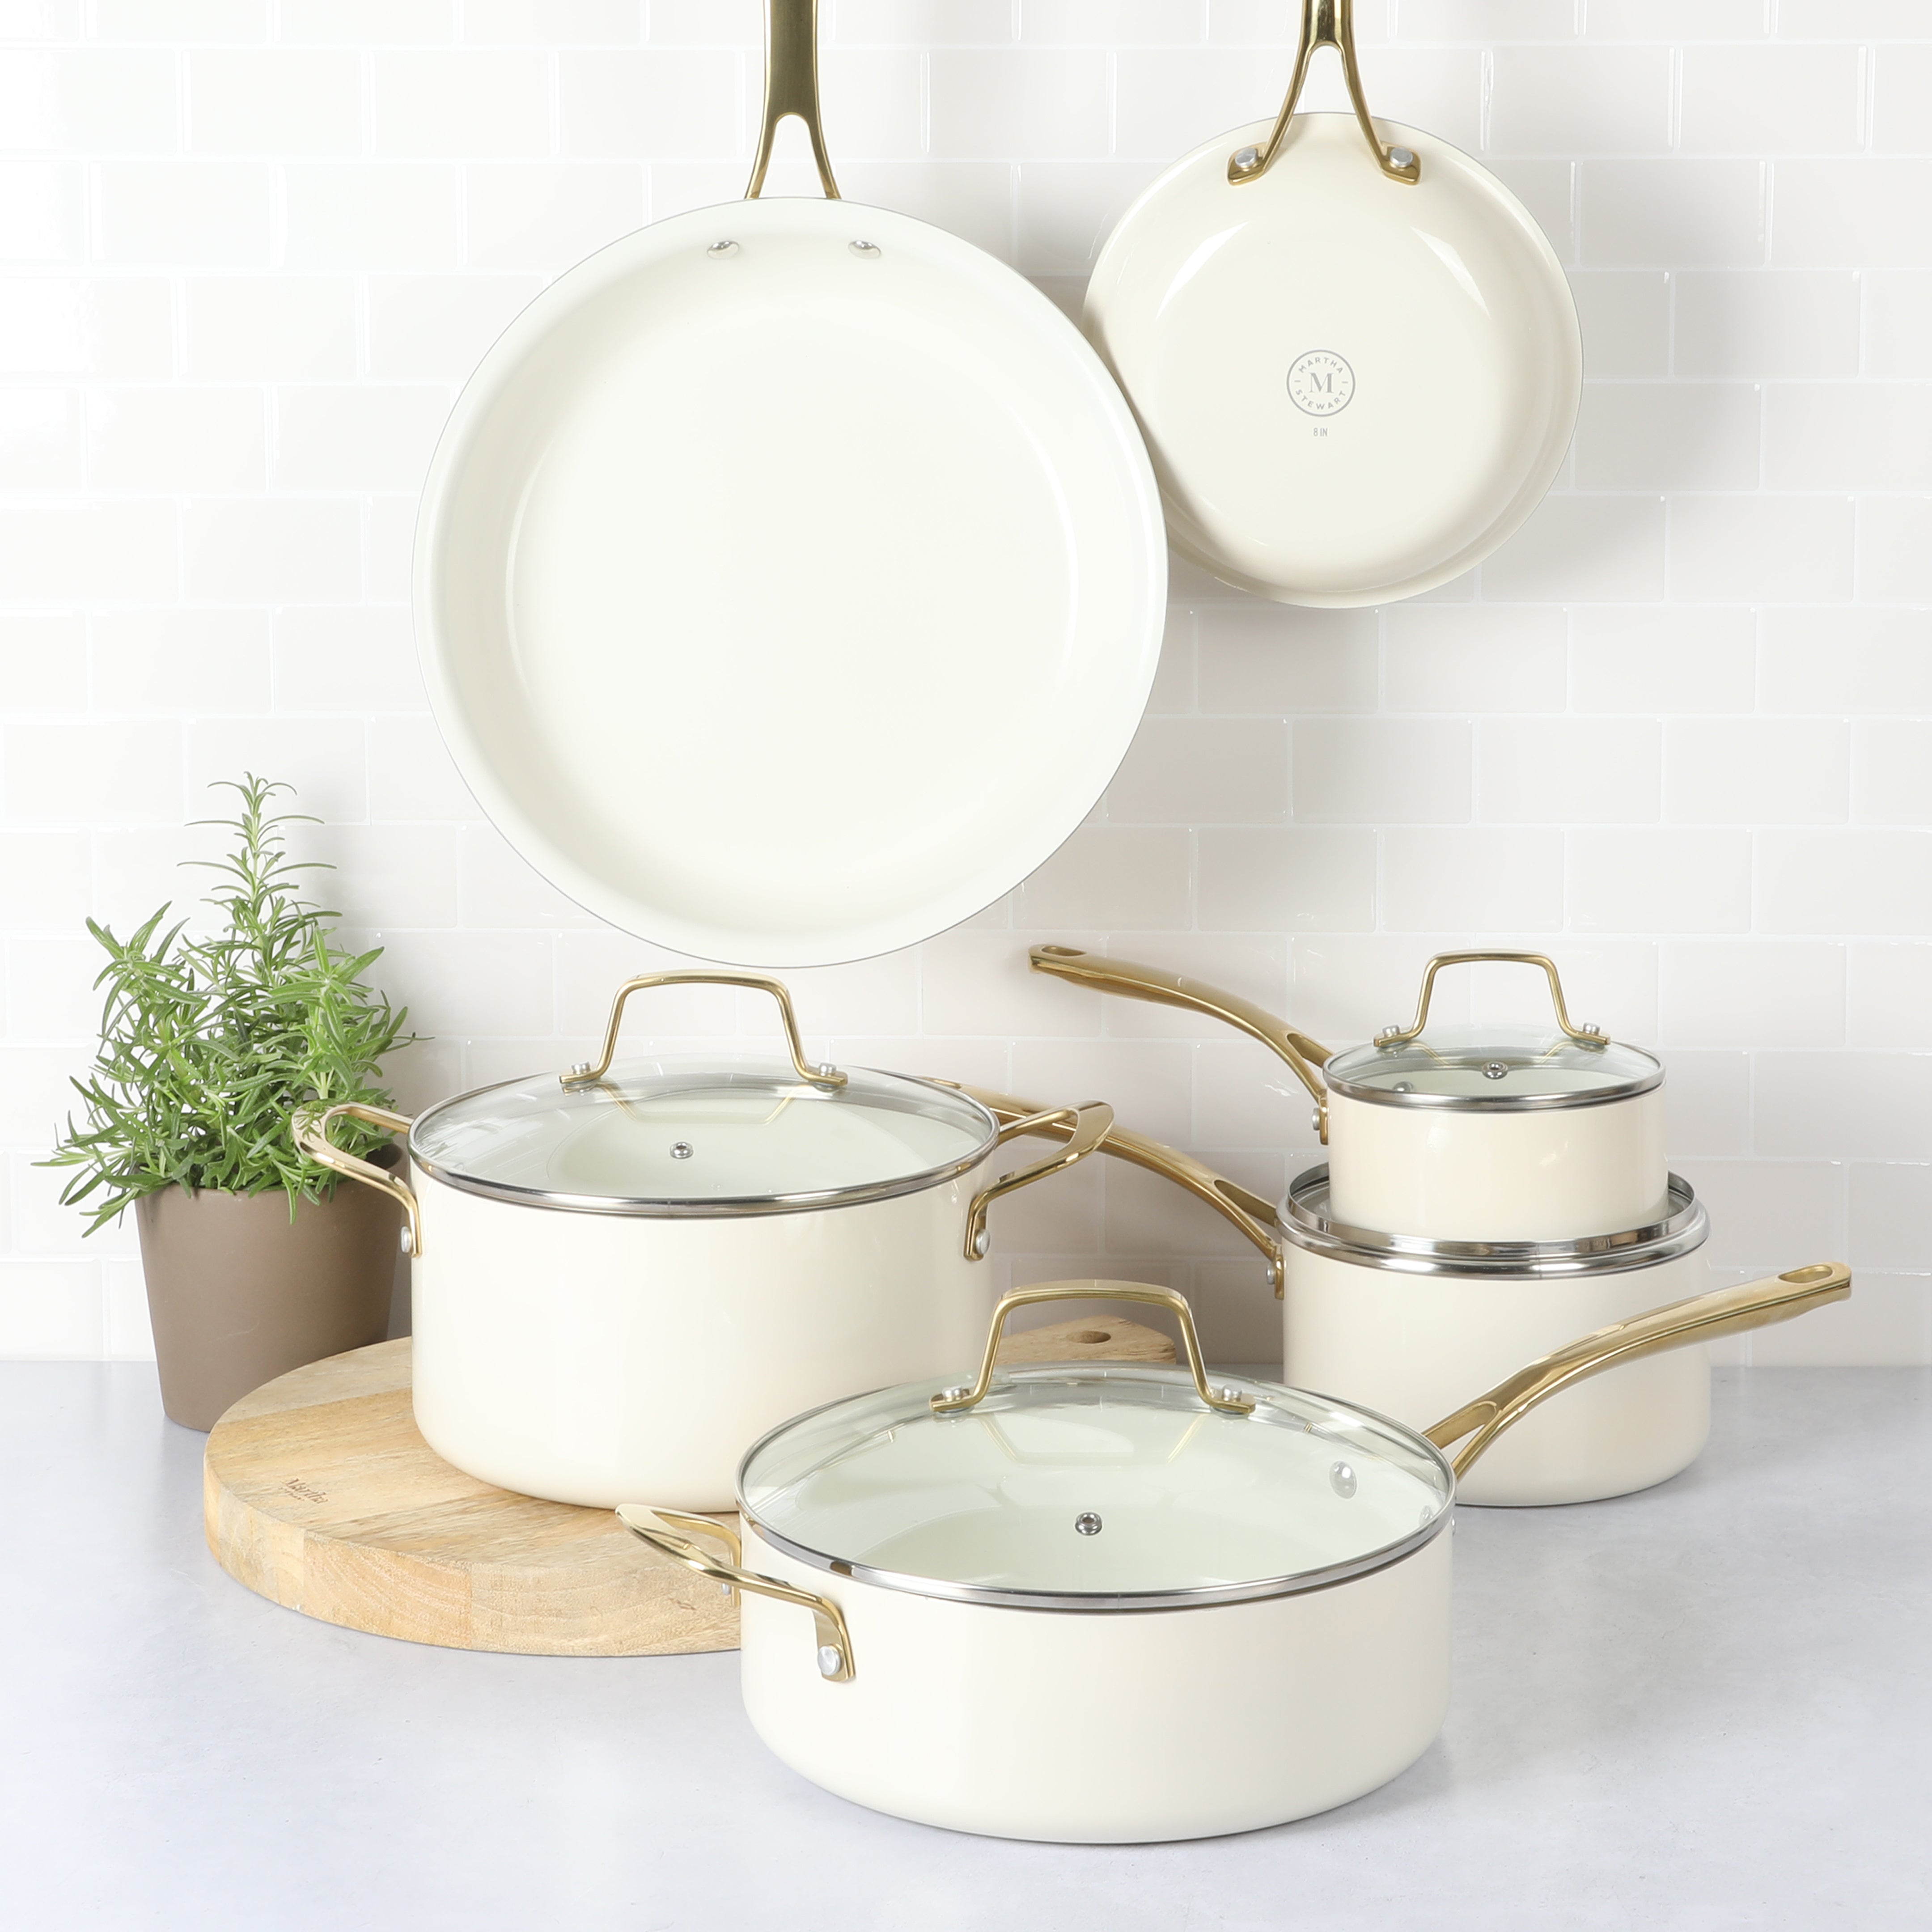 Ceramic Non-Stick Pans in Pots & Pans